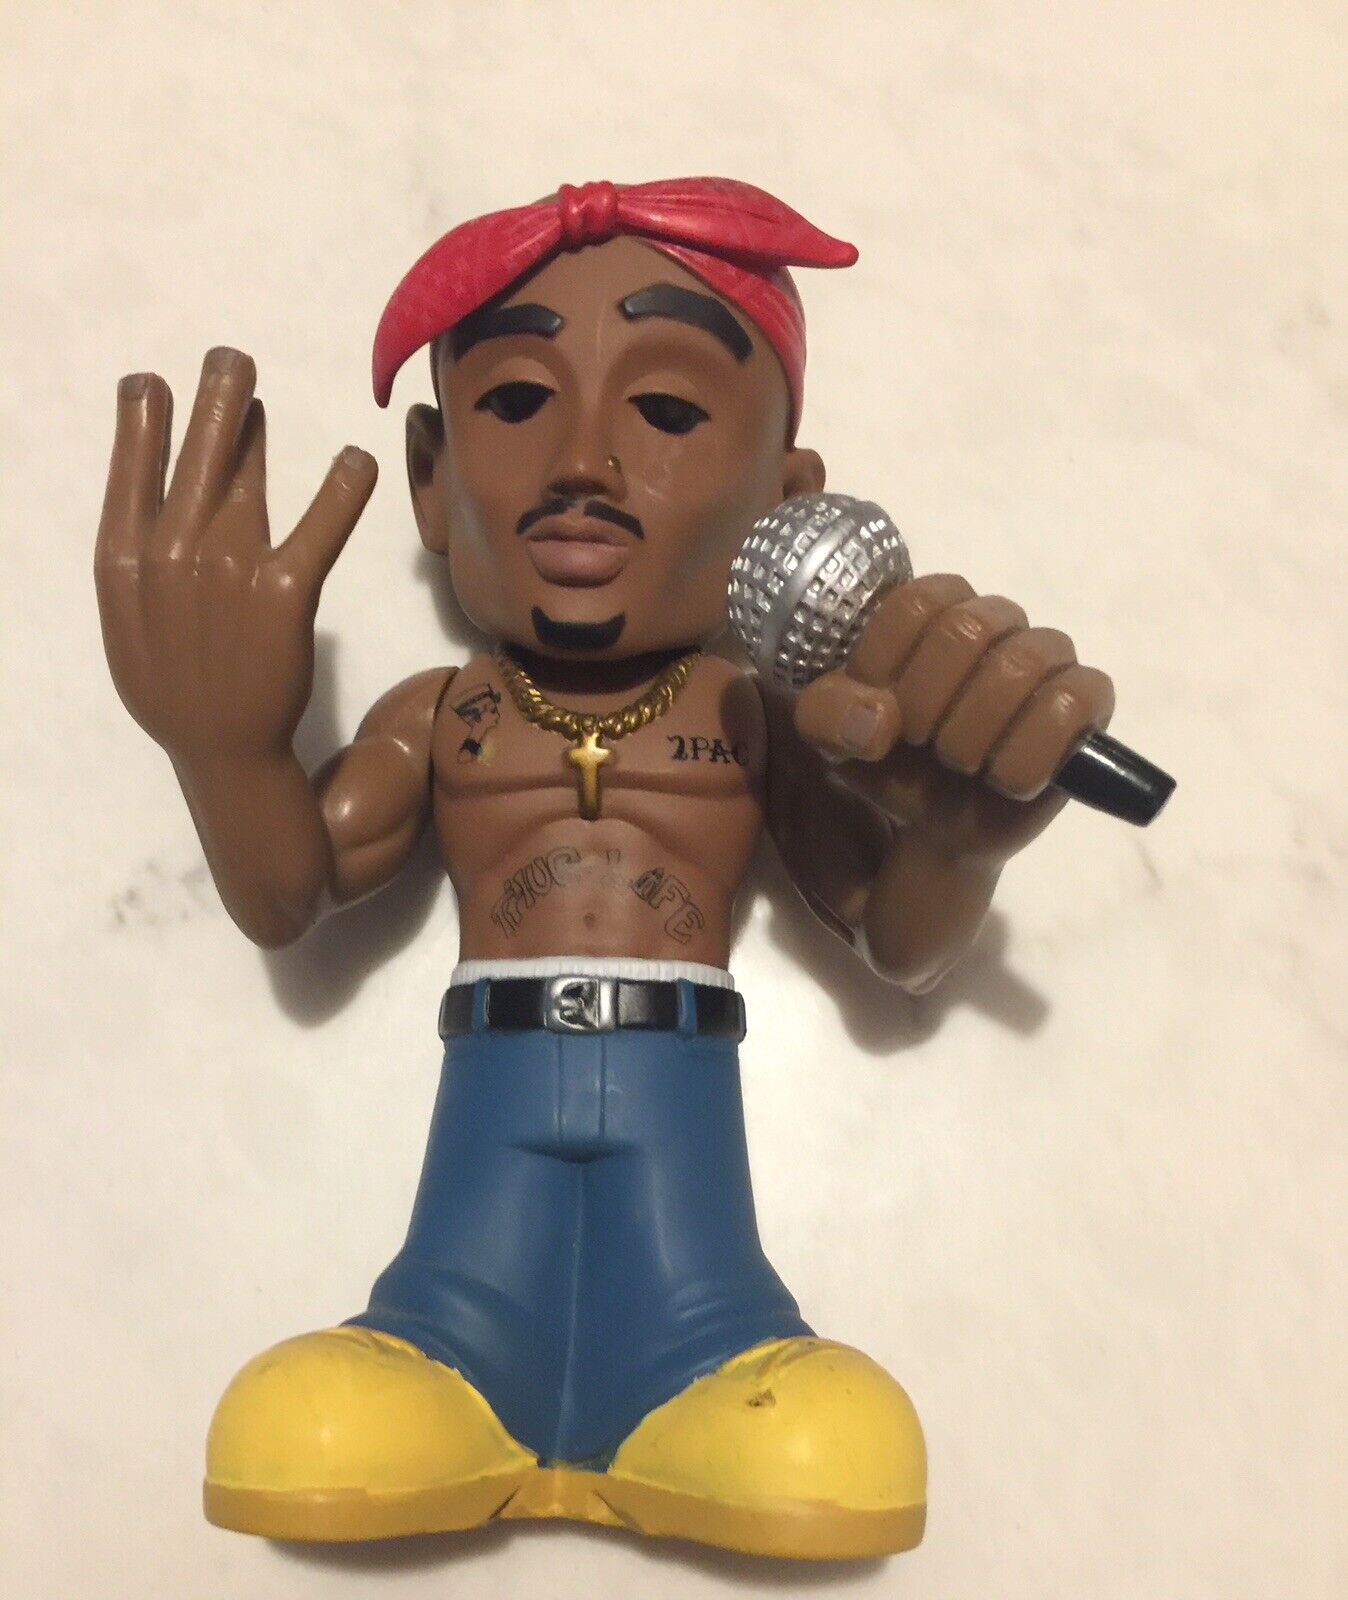 #HotRare Funko Urban Vinyl Tupac Shakur figure 2011 doll toy 2pac No Box